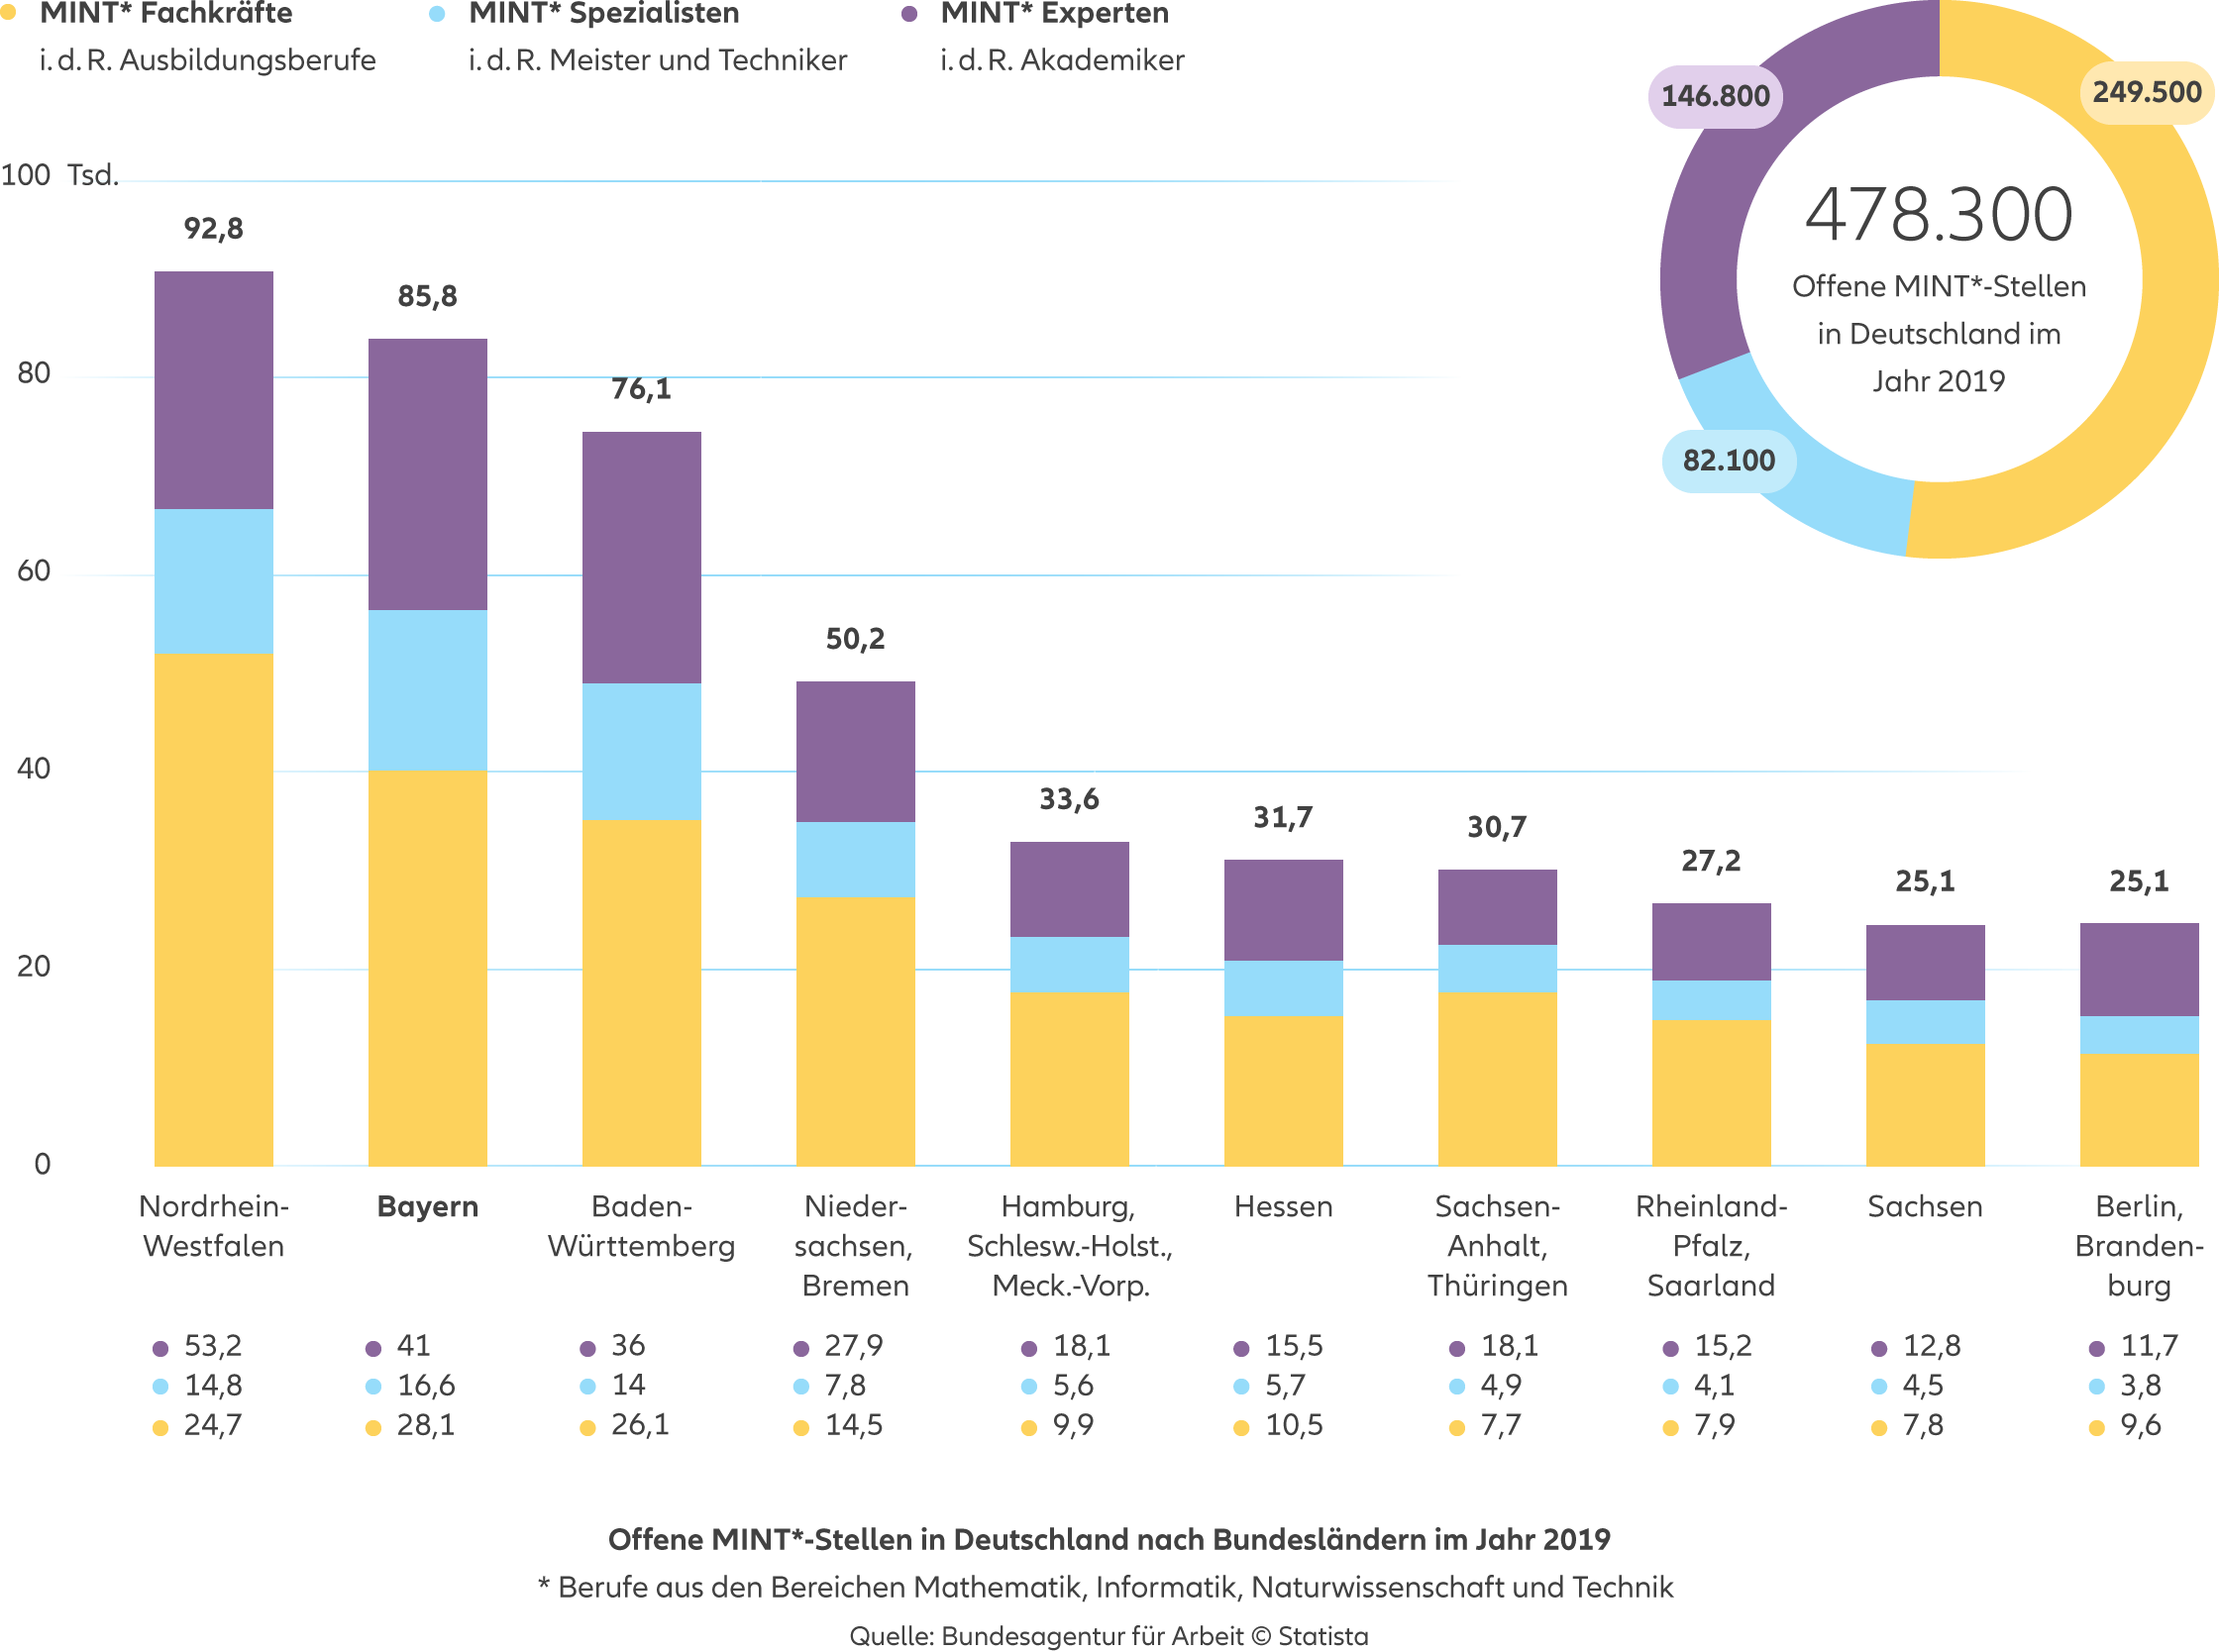 Allianz - Agentursuche Betriebliche Altersvorsorge München - Infografik: Offene MINT*-Stellen in Deutschland nach Bundesländern und Berufsaggregaten im Jahr 2019